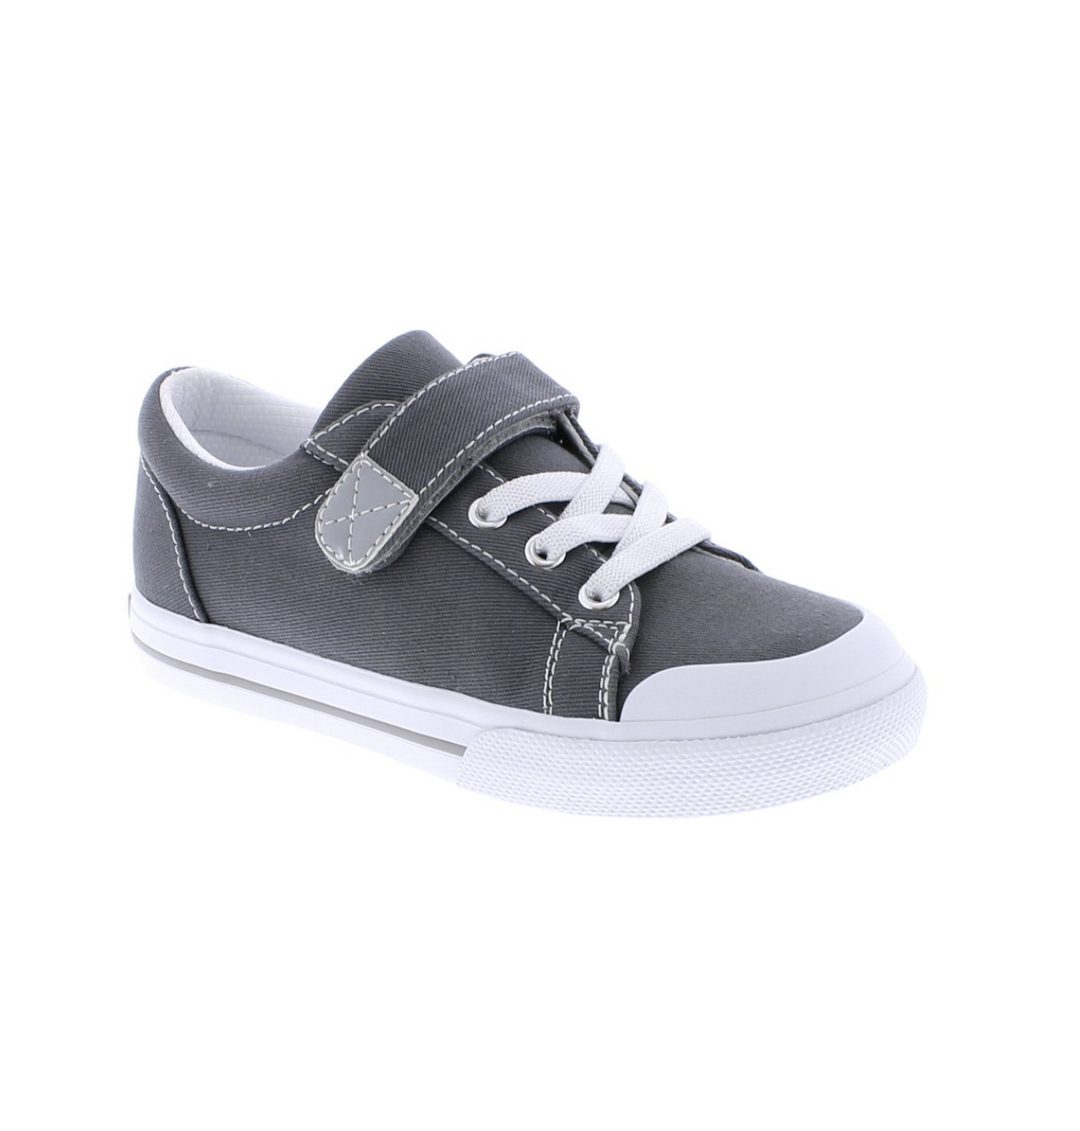 Jordan - Gray Velcro